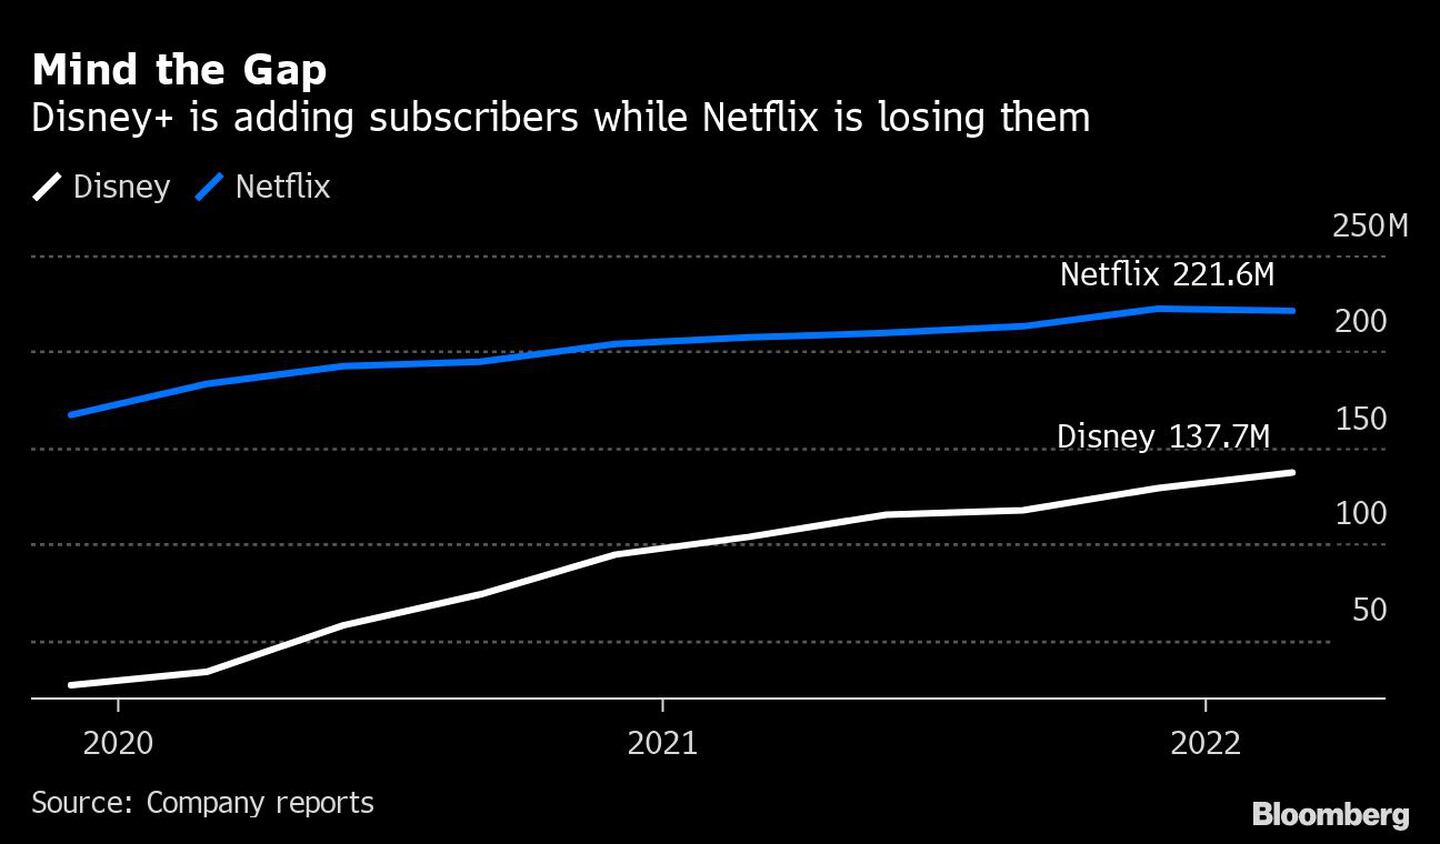 Cuidado con la brecha
Disney+ suma suscriptores mientras Netflix los pierde
Blanco: Disney
Azul: Netflixdfd